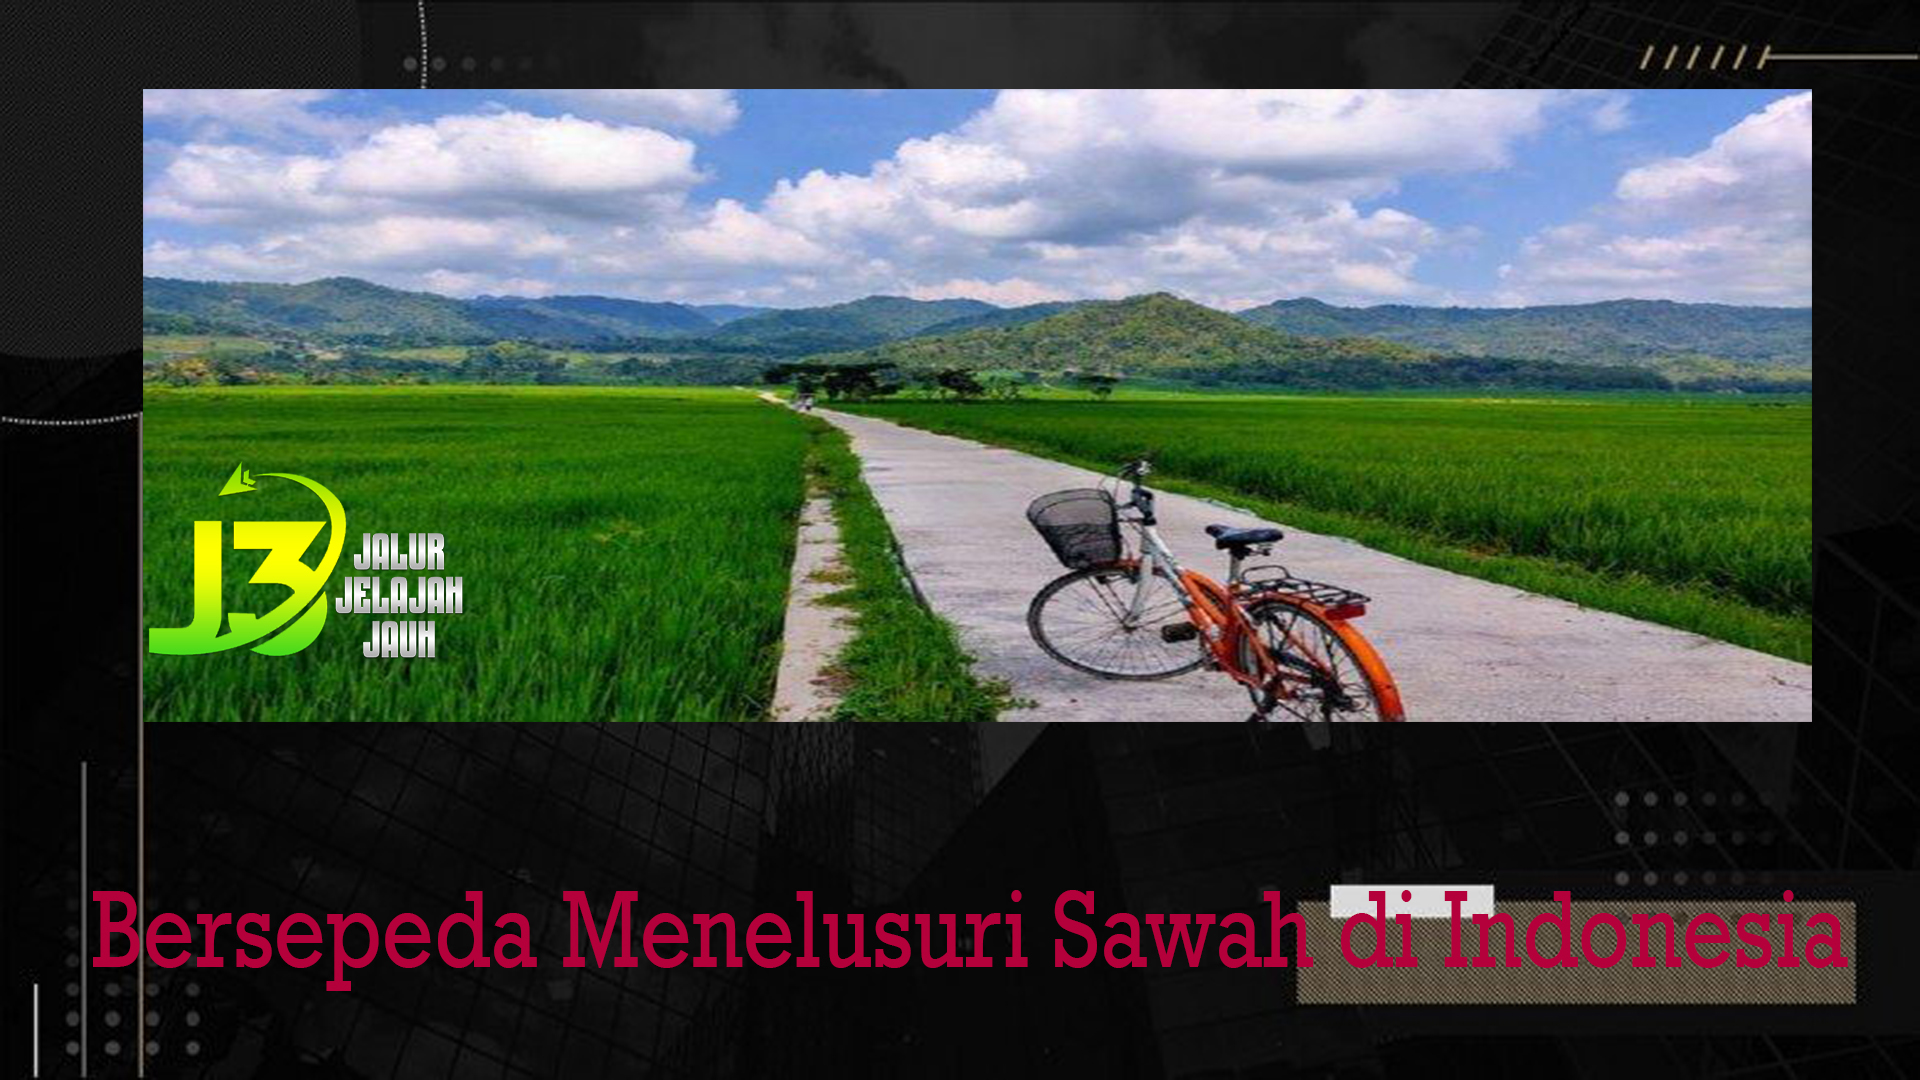 Bersepeda Menelusuri Sawah di Indonesia